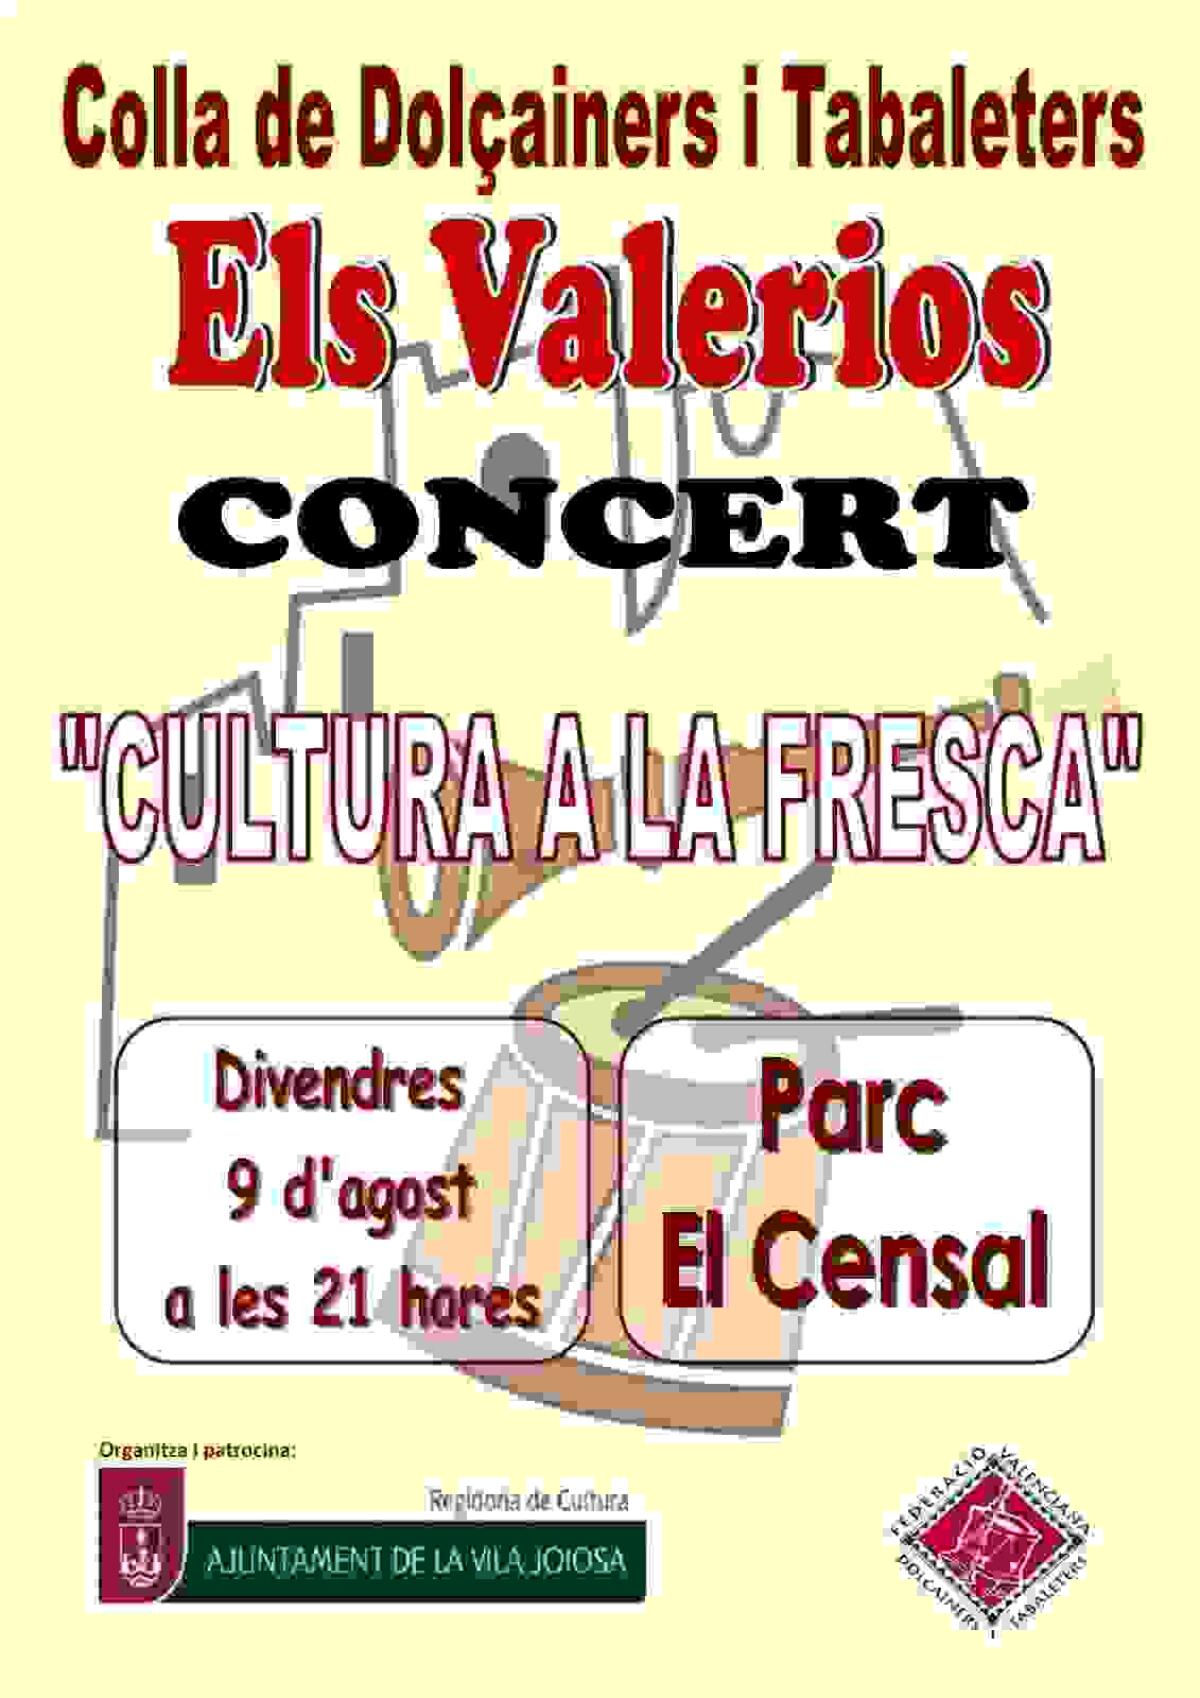 La Vila · Cultura organiza un concierto ‘a la fresca’ al ritmo de dolçaina y tabalet de la colla Els Valerios